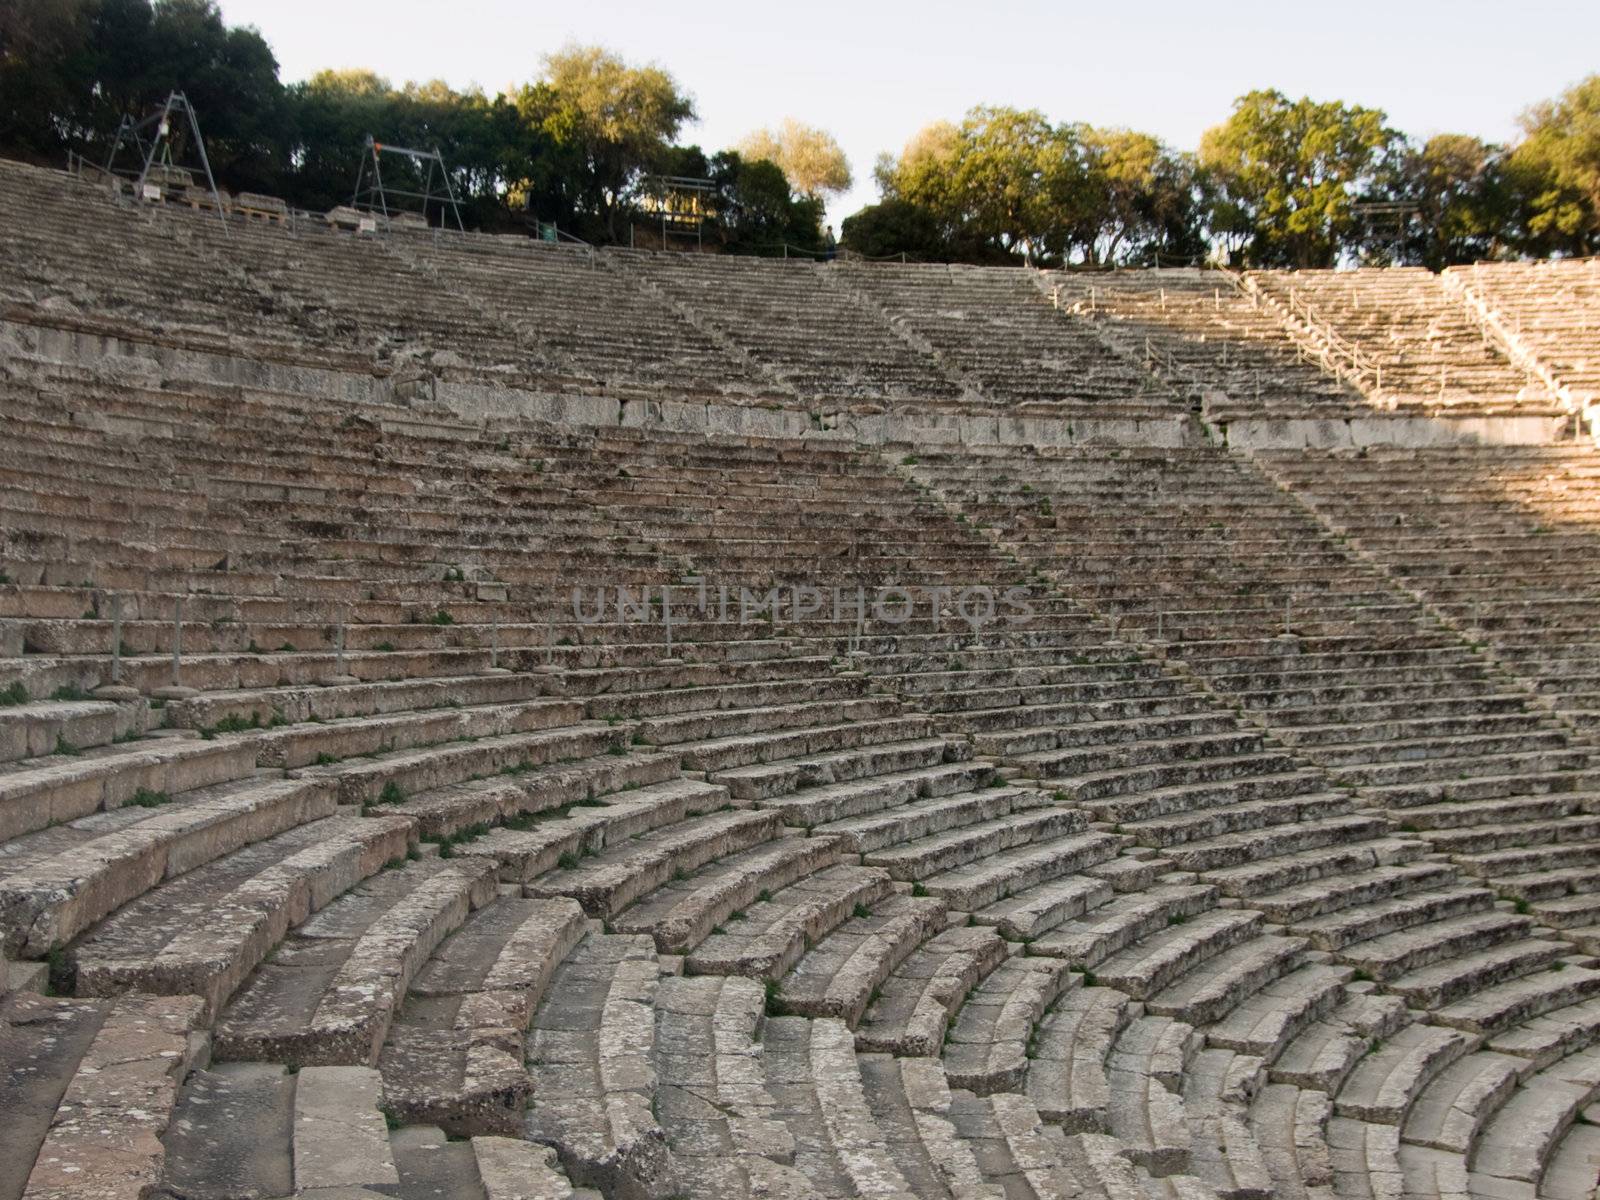 Greek amphitheatre  by dyvan